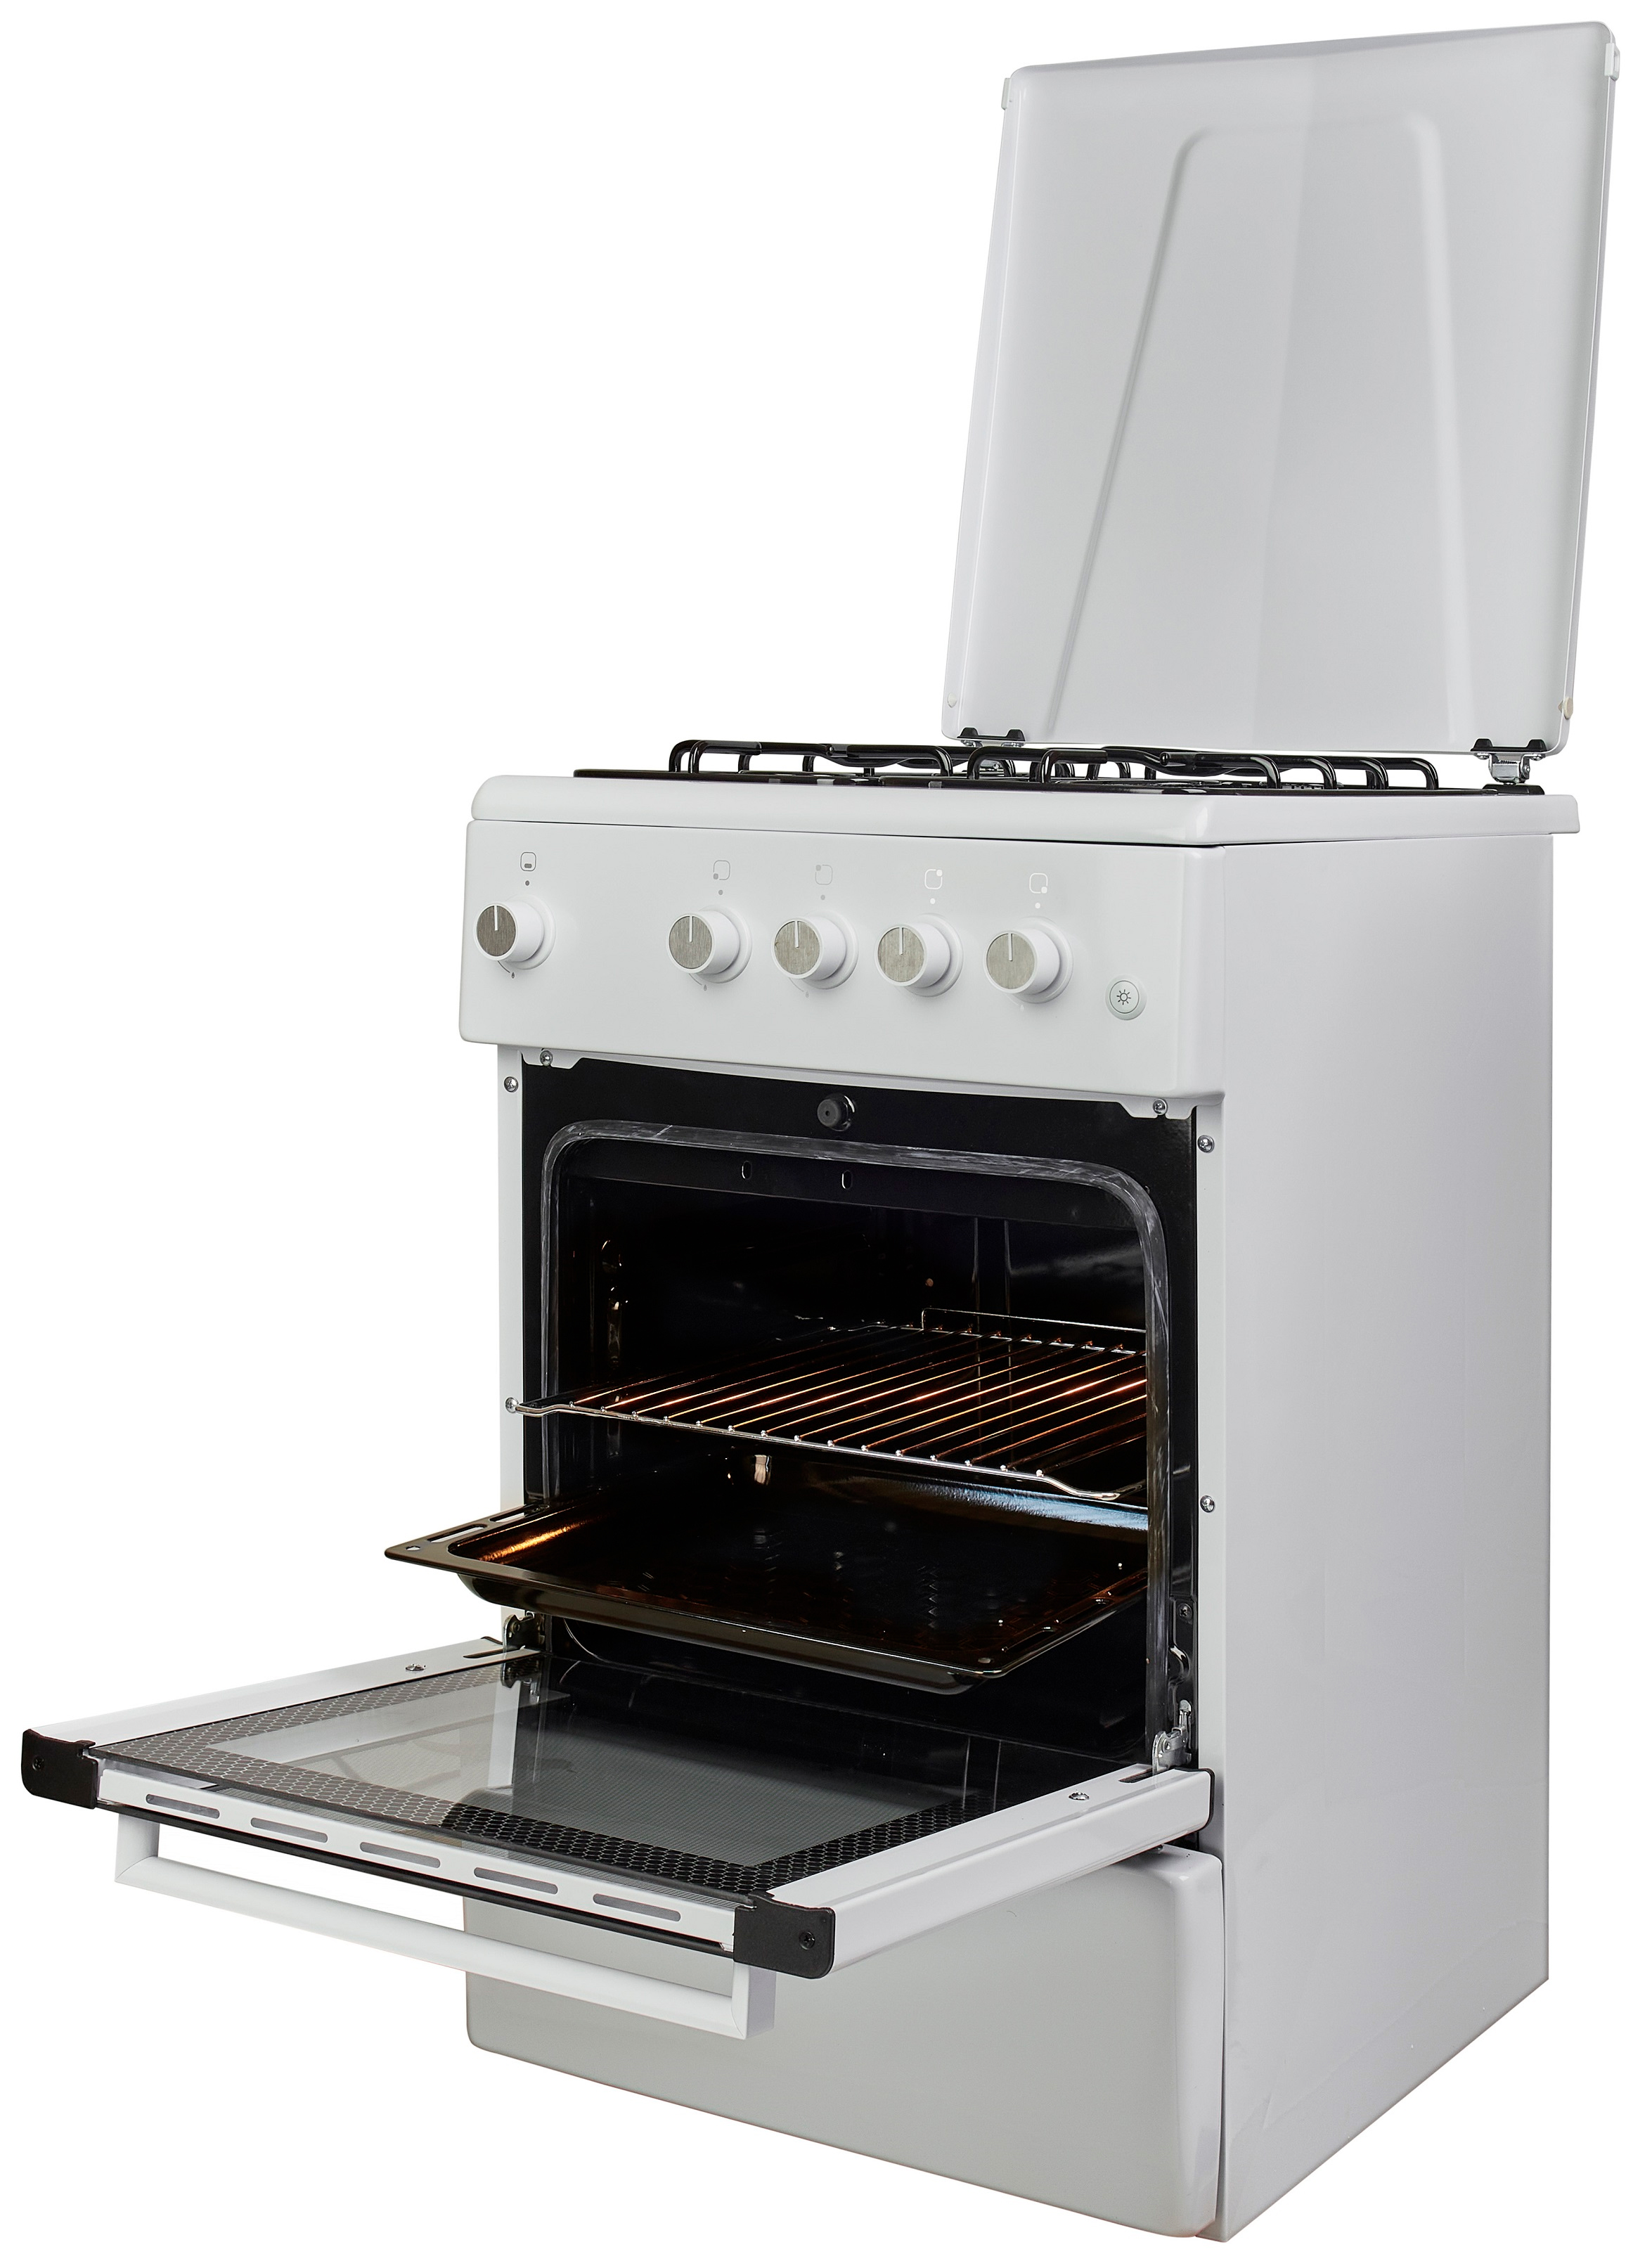 Кухонная плита Fiesta G 5403 SACD-W отзывы - изображения 5